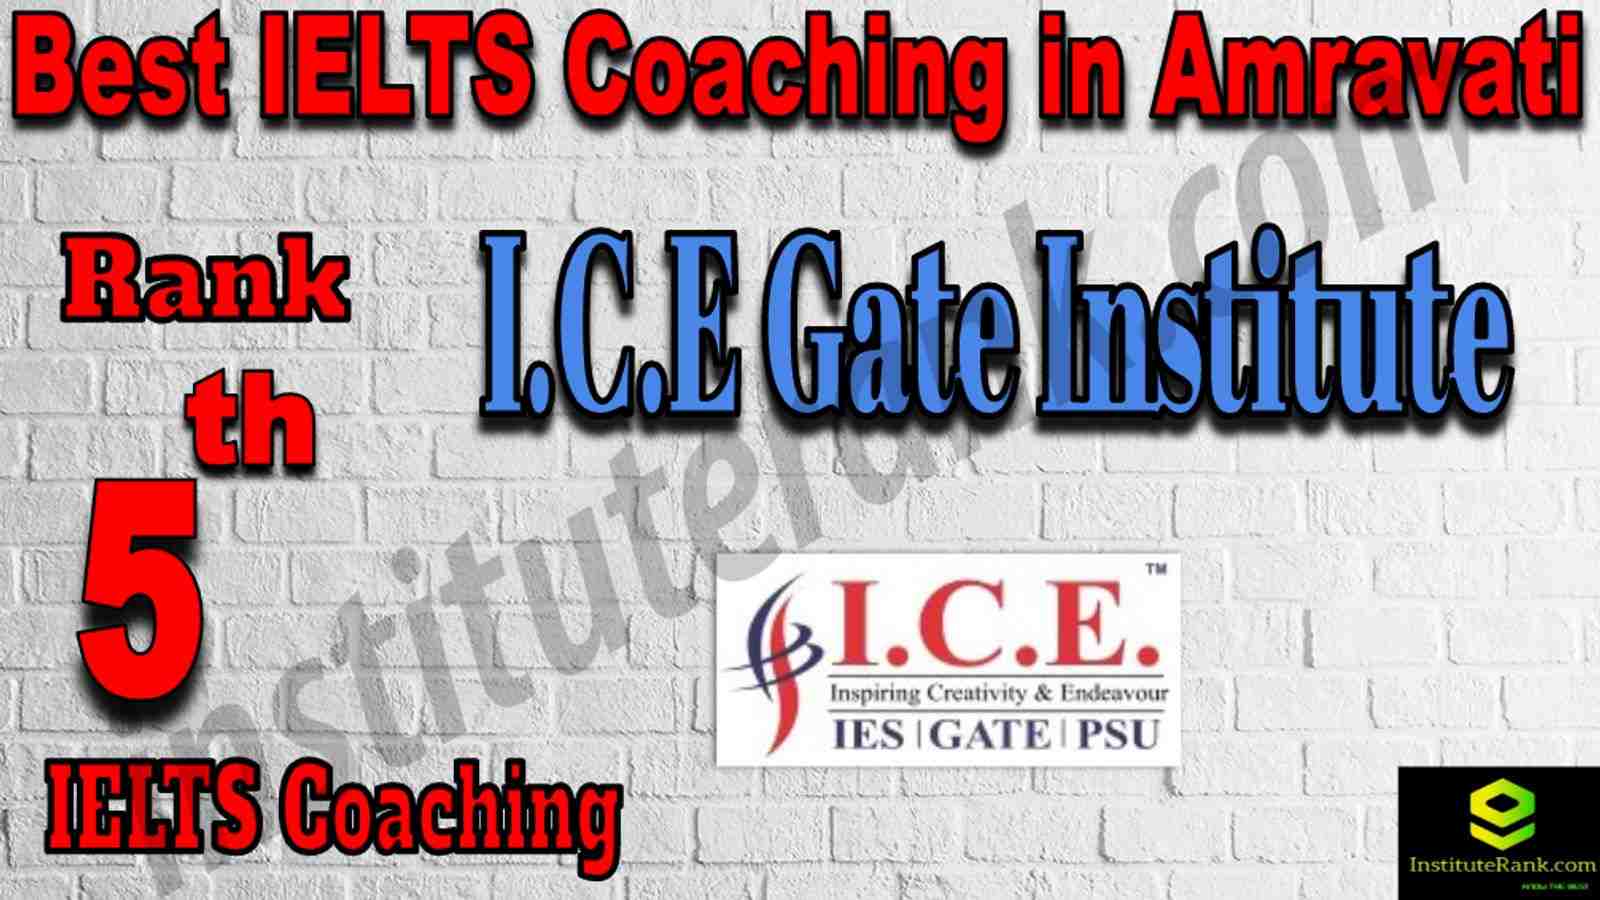 5th Best IELTS Coaching in Amravati